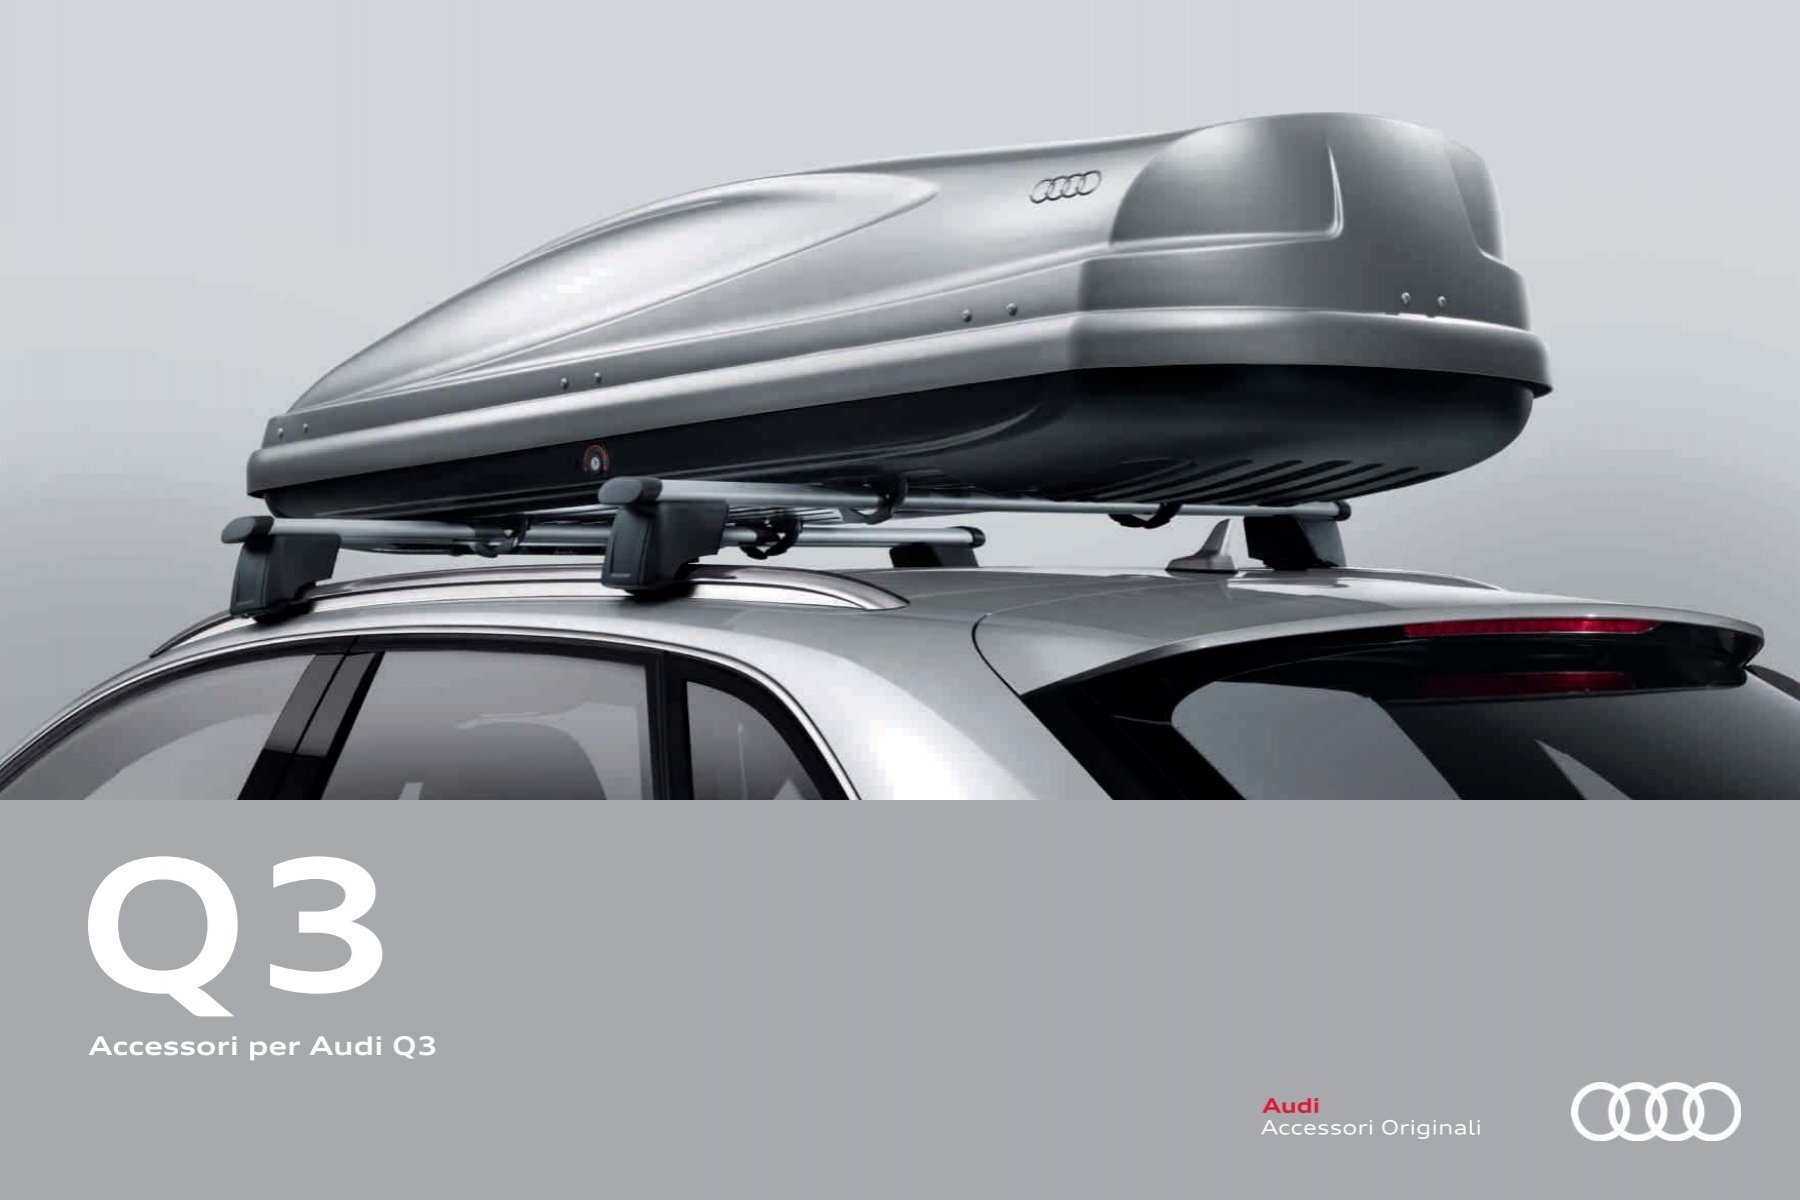 Accessori per Audi Q3 - Automoto.it